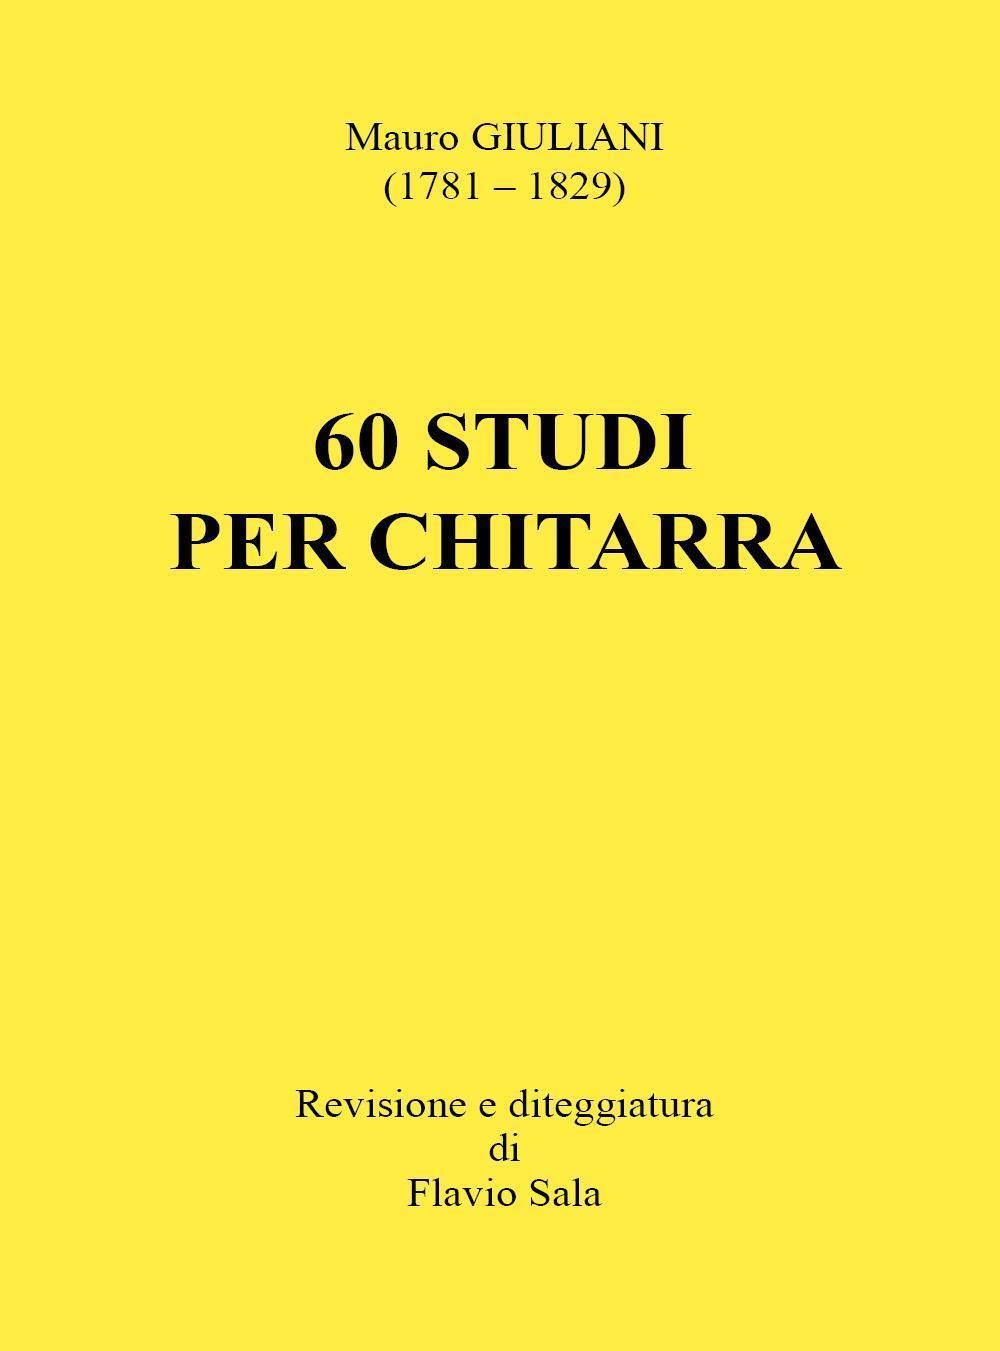 Mauro Giuliani: 60 Studi per Chitarra (Revisione e diteggiatura di Flavio Sala)